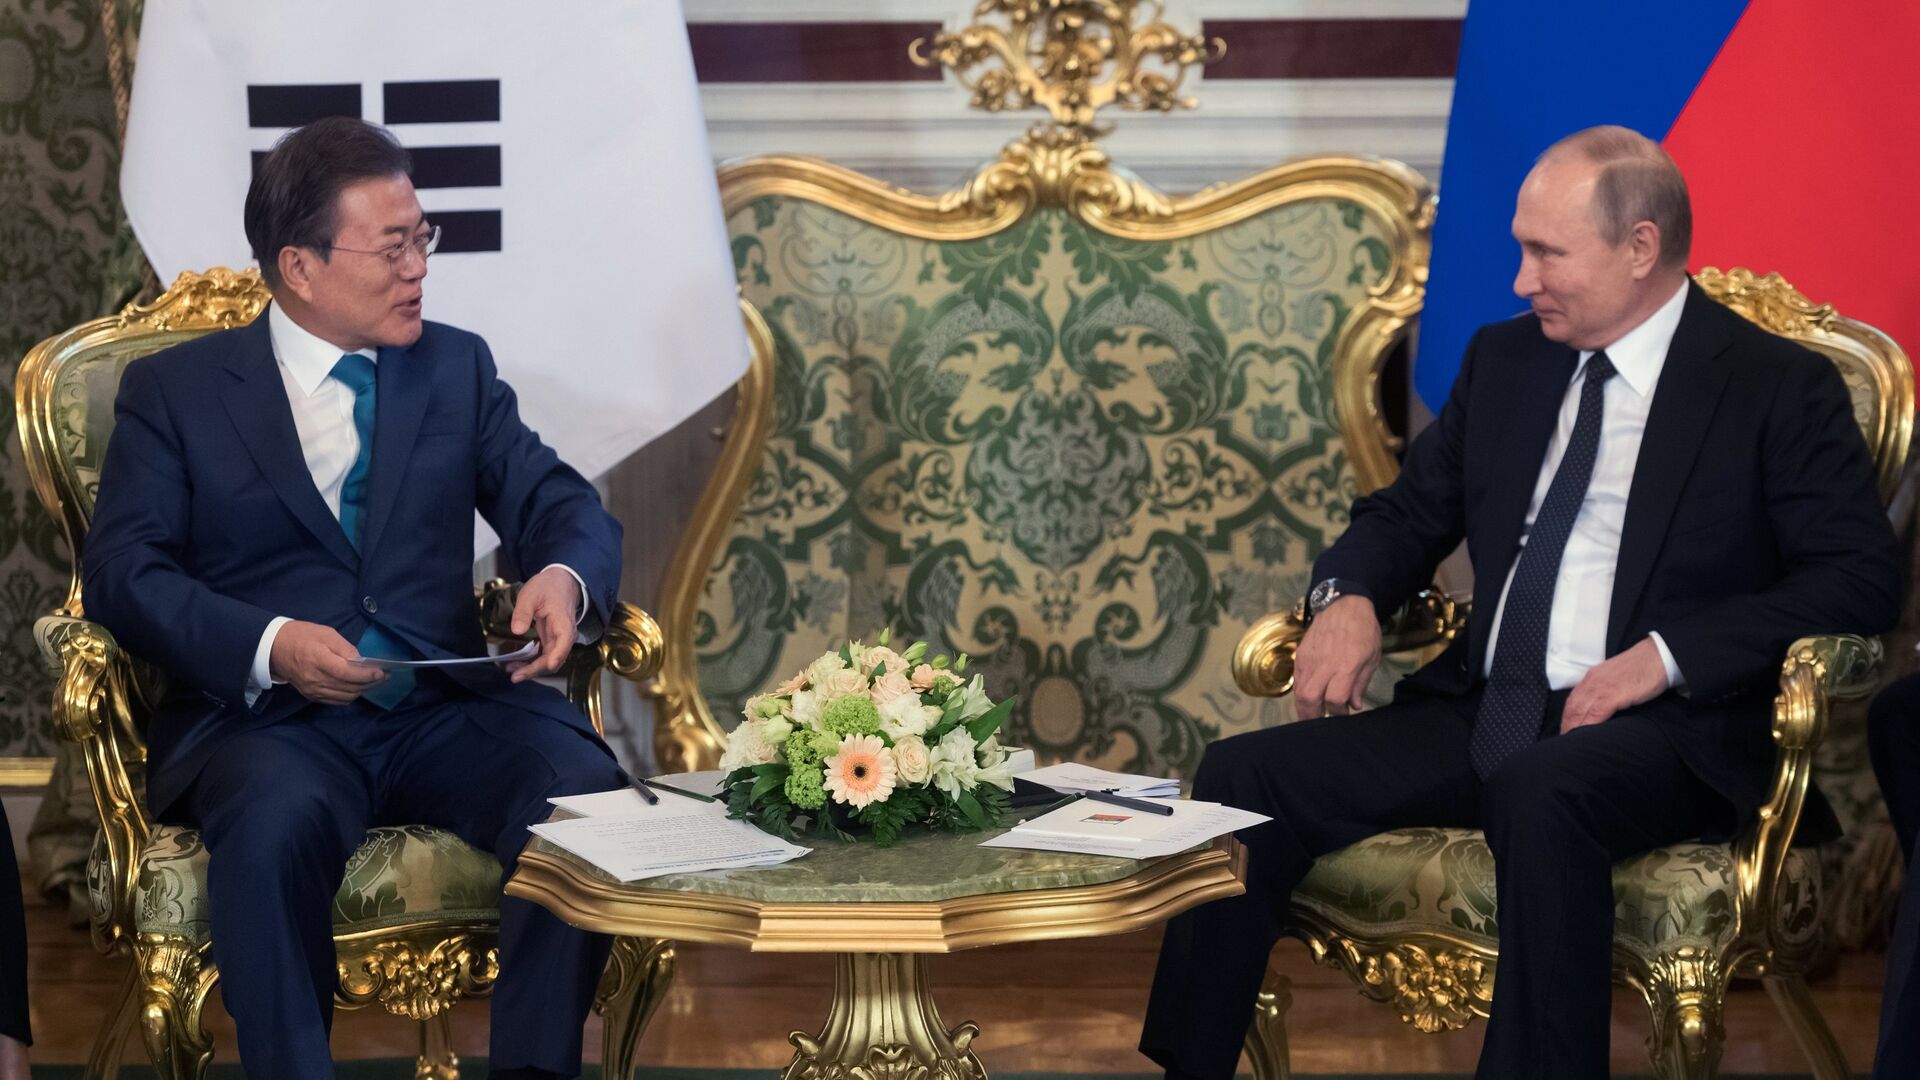 Владимир Путин и президент Республики Корея Мун Чжэ Ин во время встречи в Кремле. 22 июня 2018 - ИноСМИ, 1920, 23.04.2022